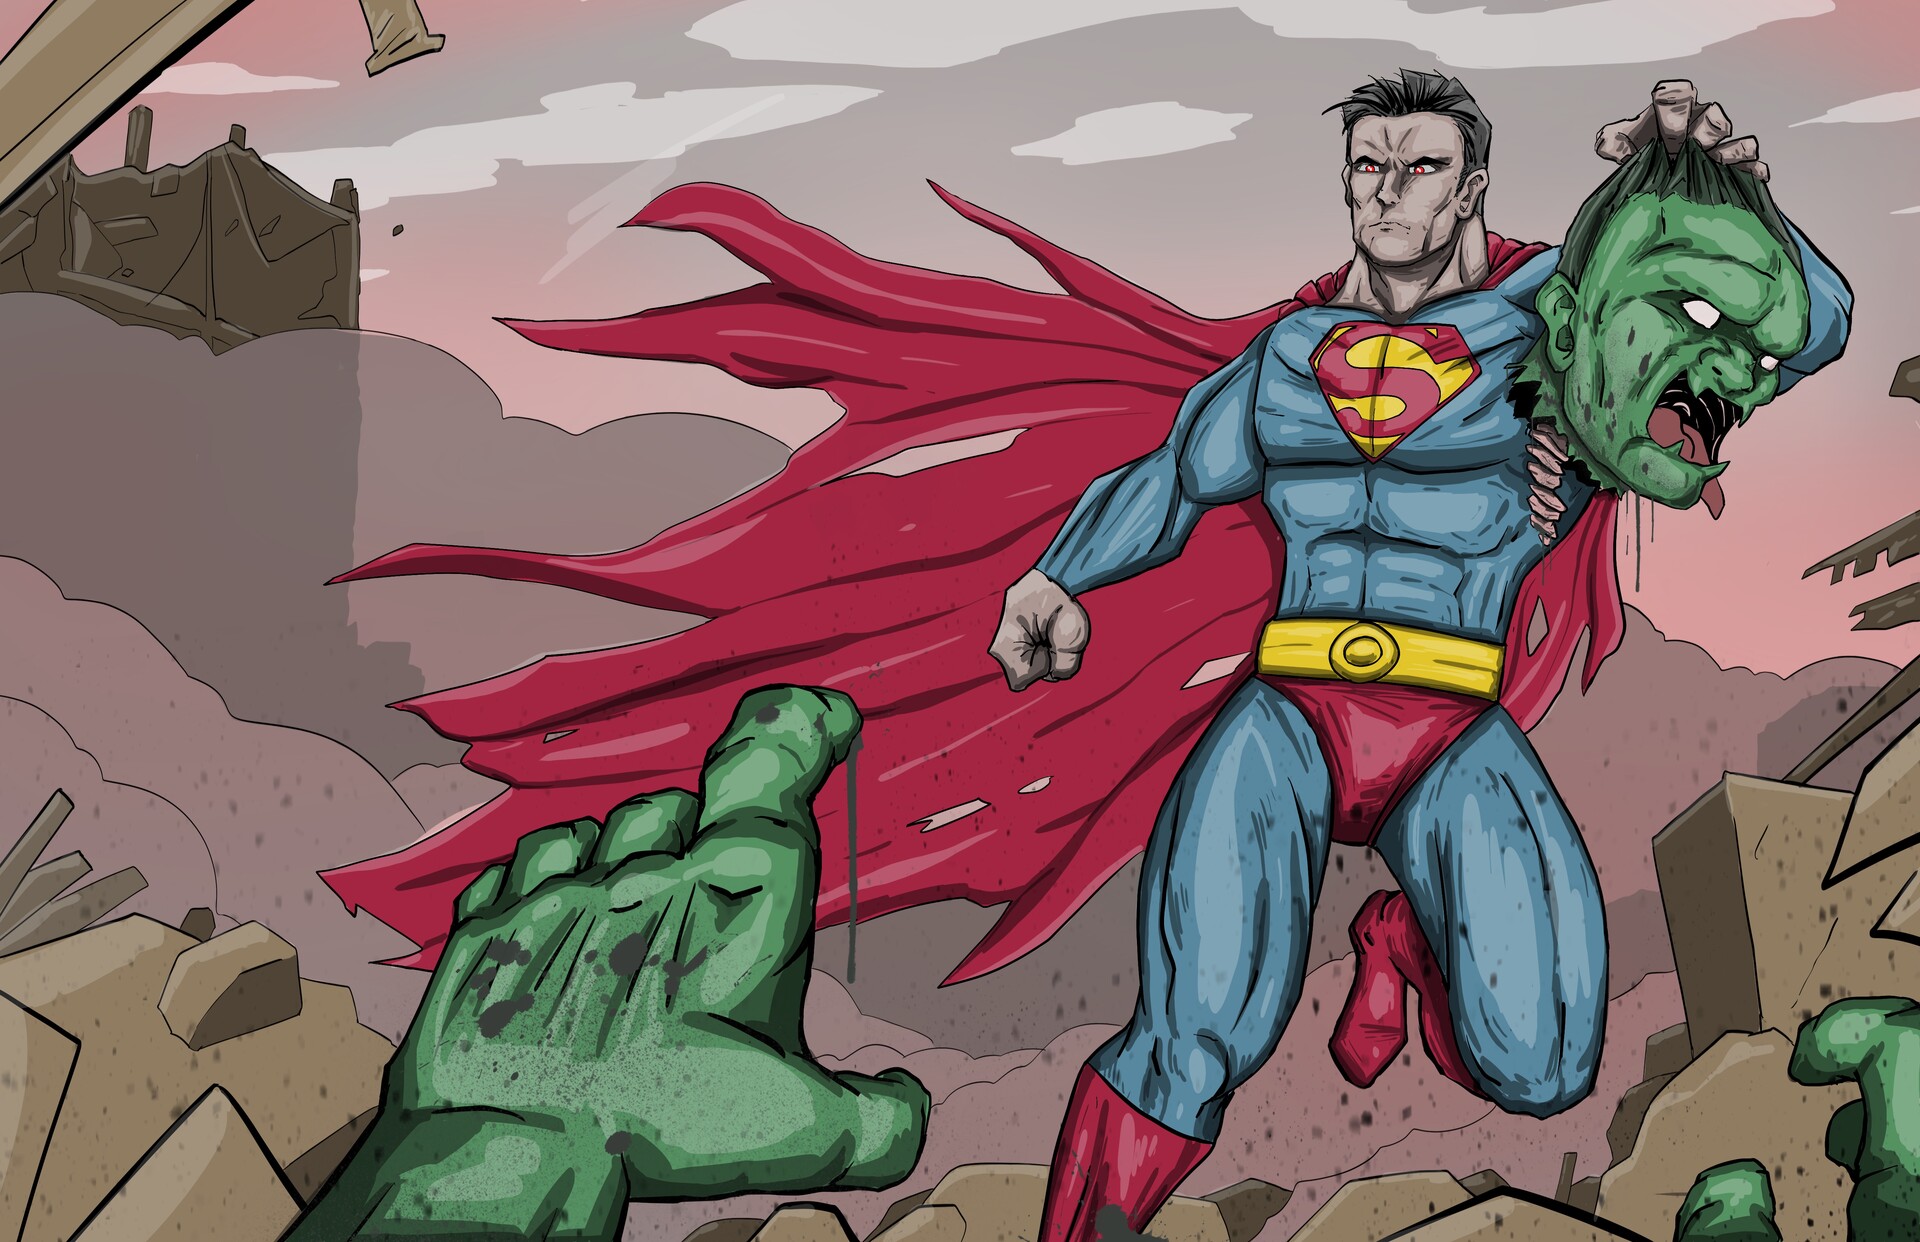 ArtStation - Hulk vs Superman, re-drawing art from 2016